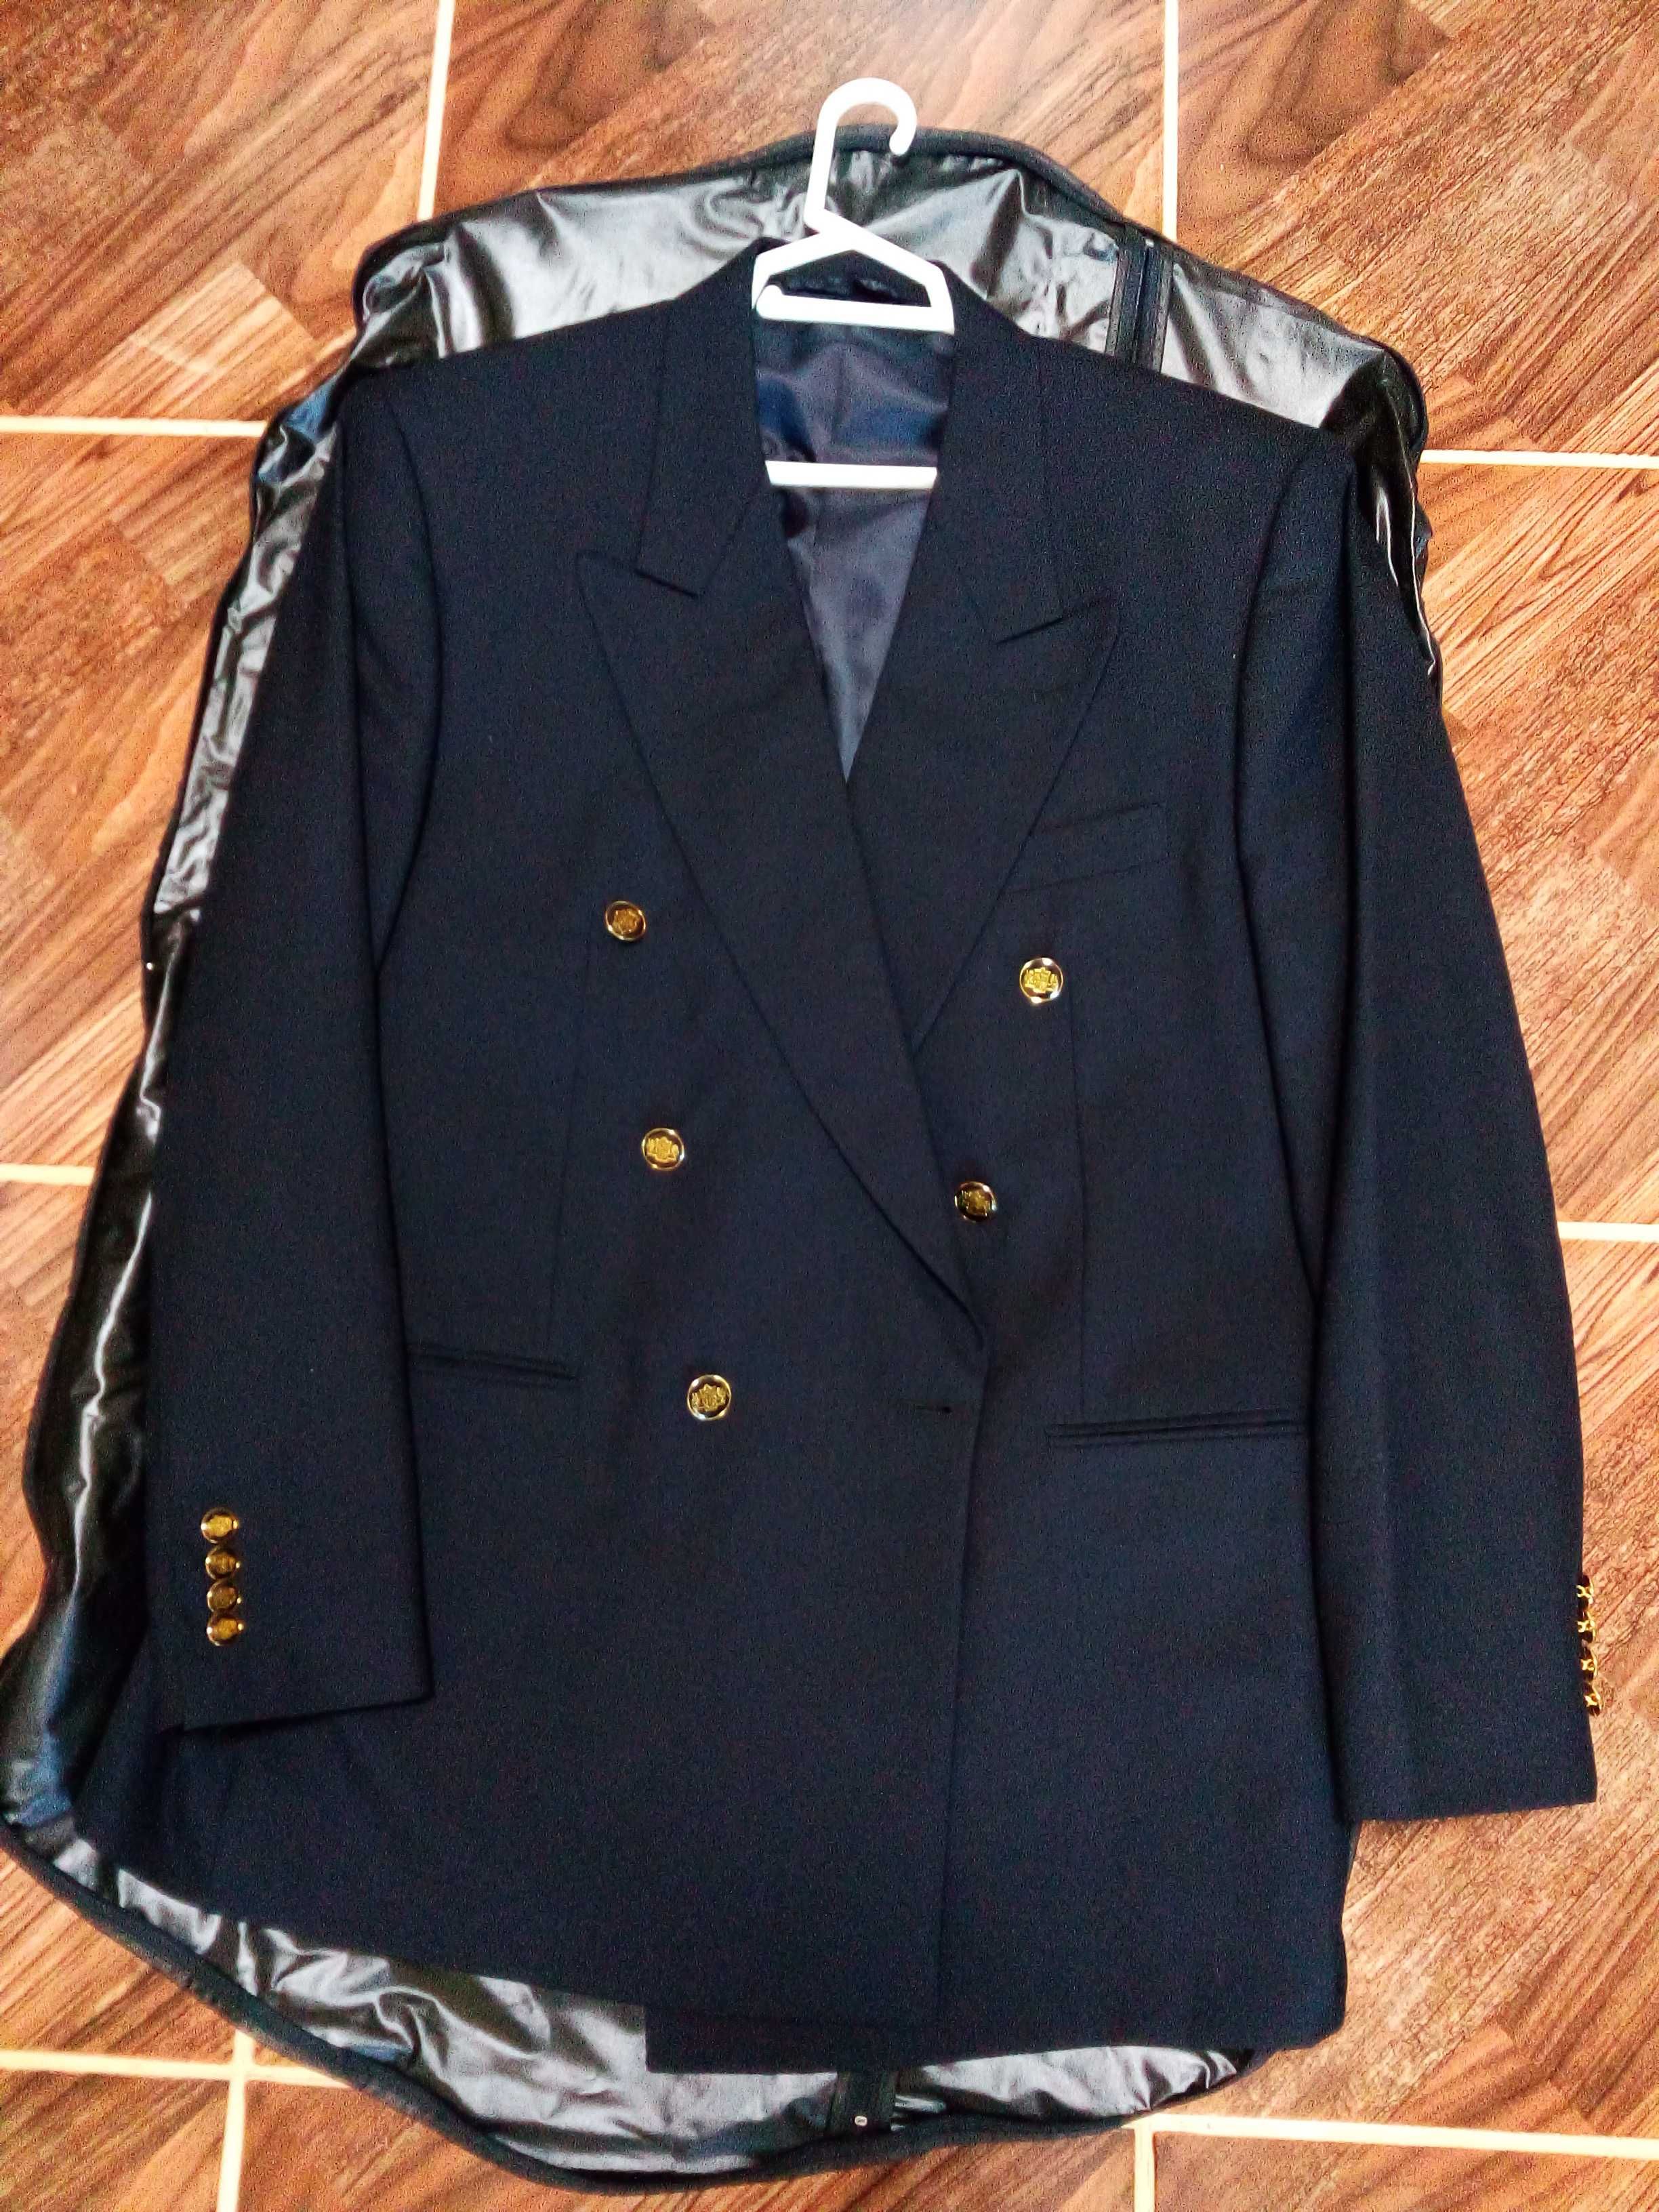 Новый двубортный пиджак Zen Zetti(пр-во Италия).50-52 размер